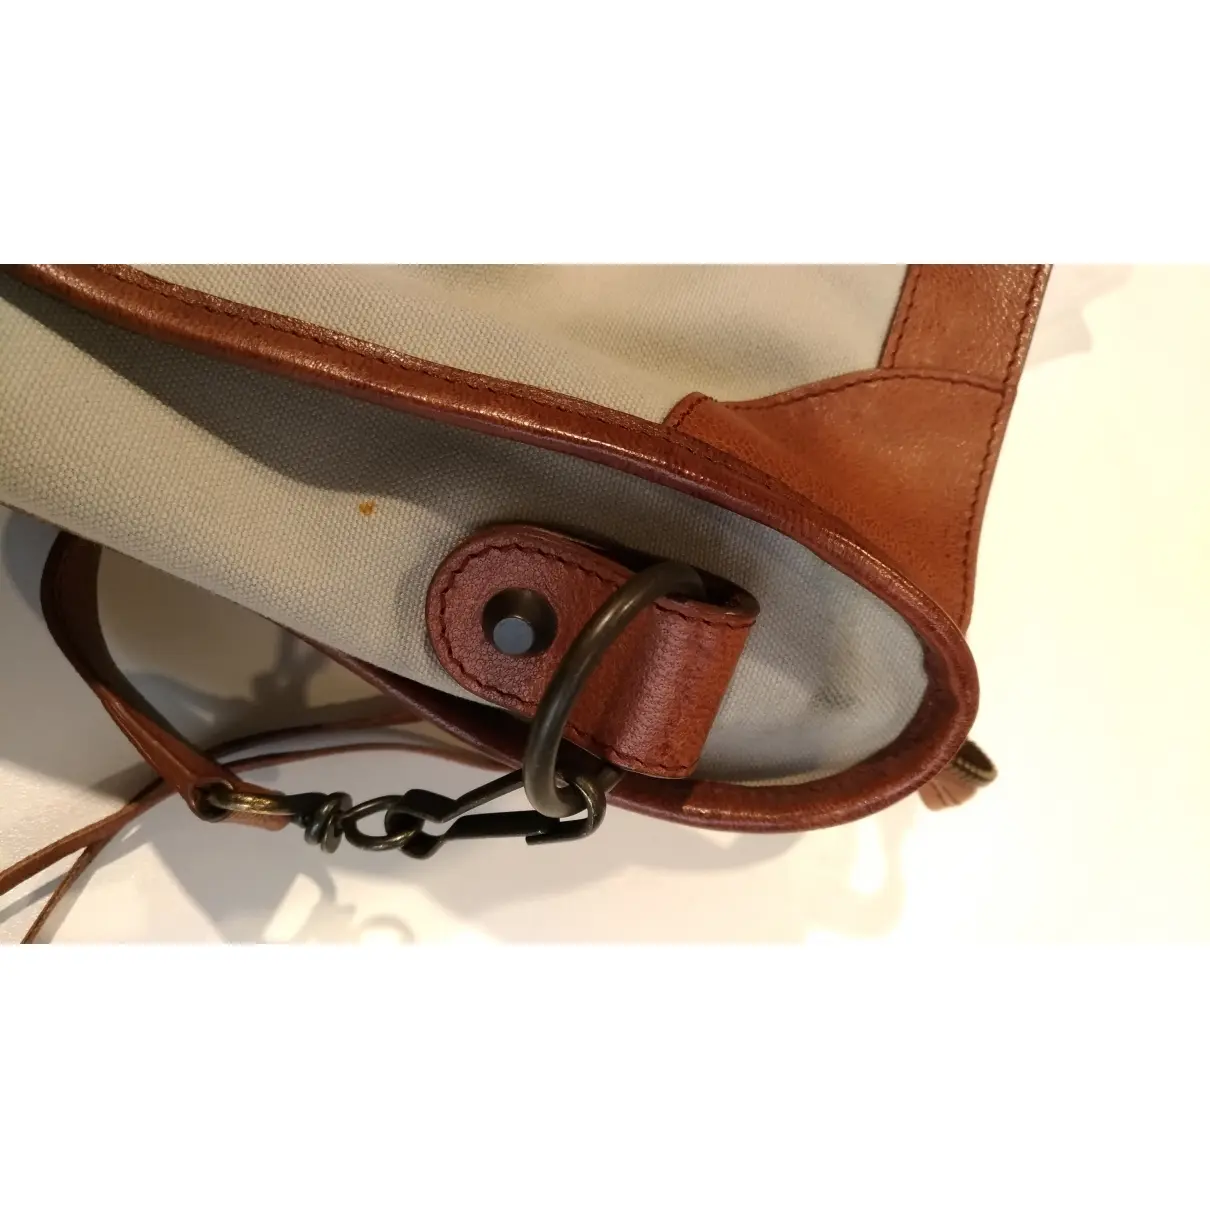 Balenciaga City cloth handbag for sale